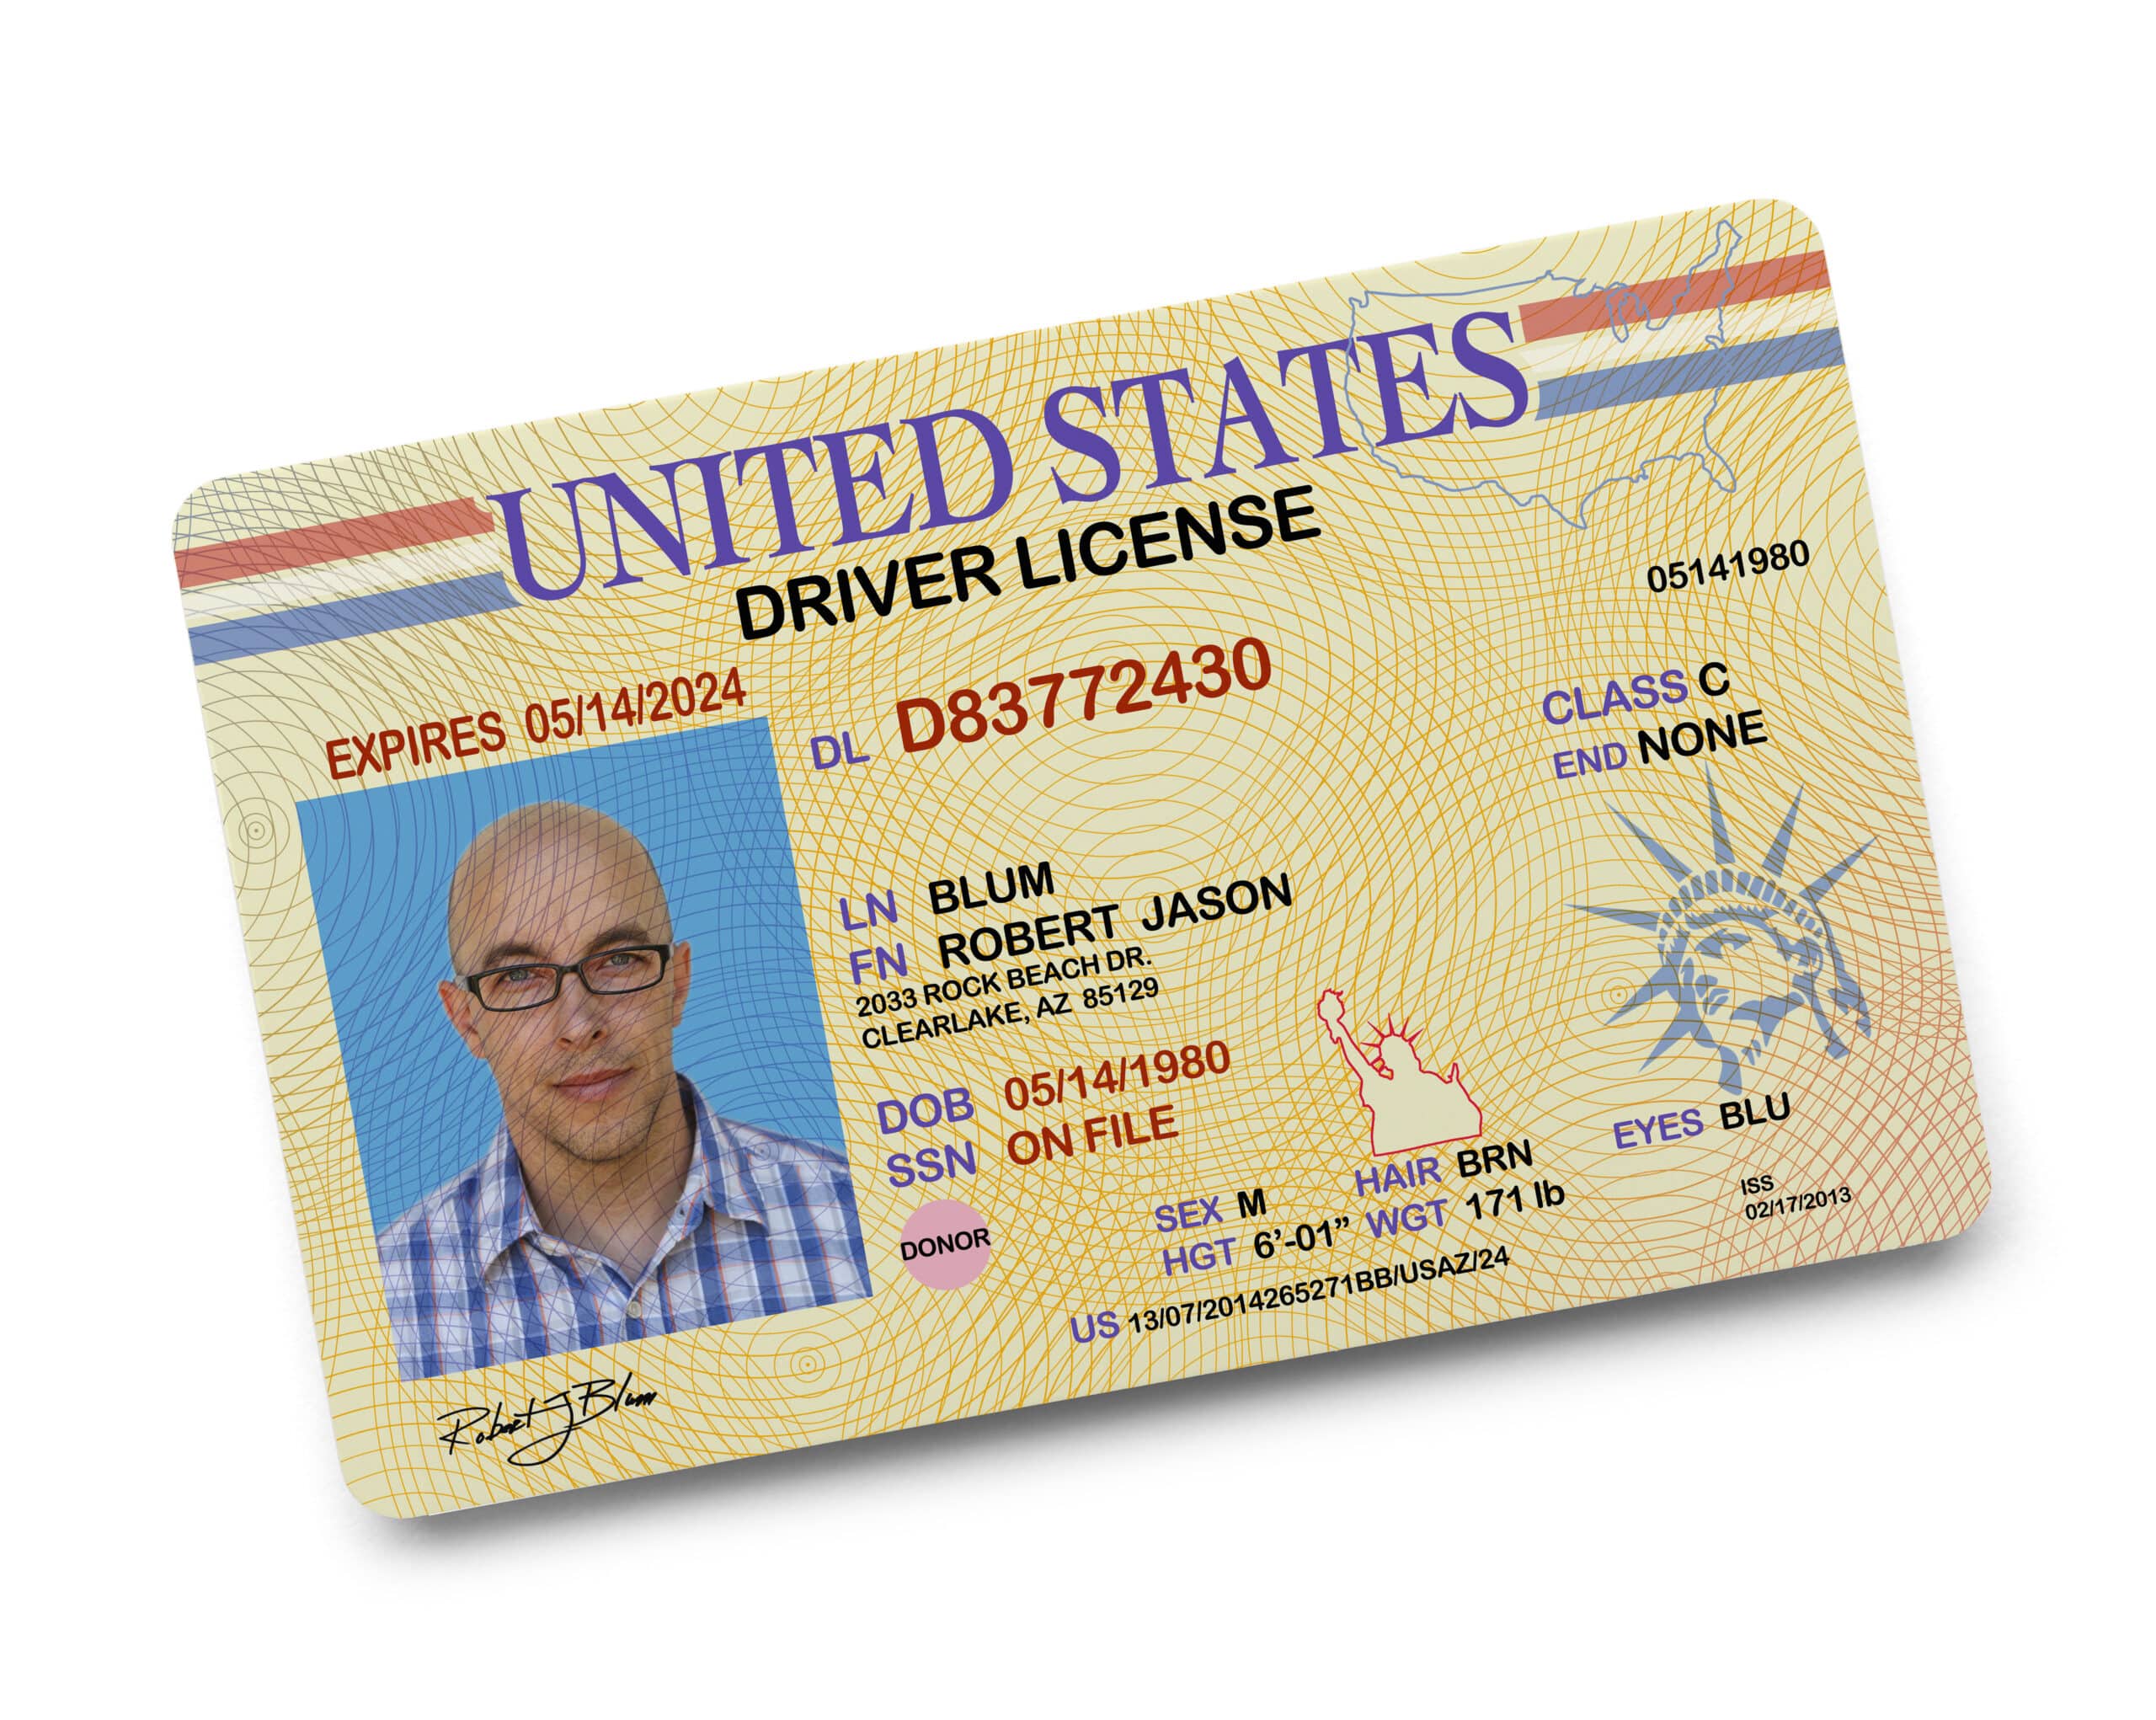 Driver's License